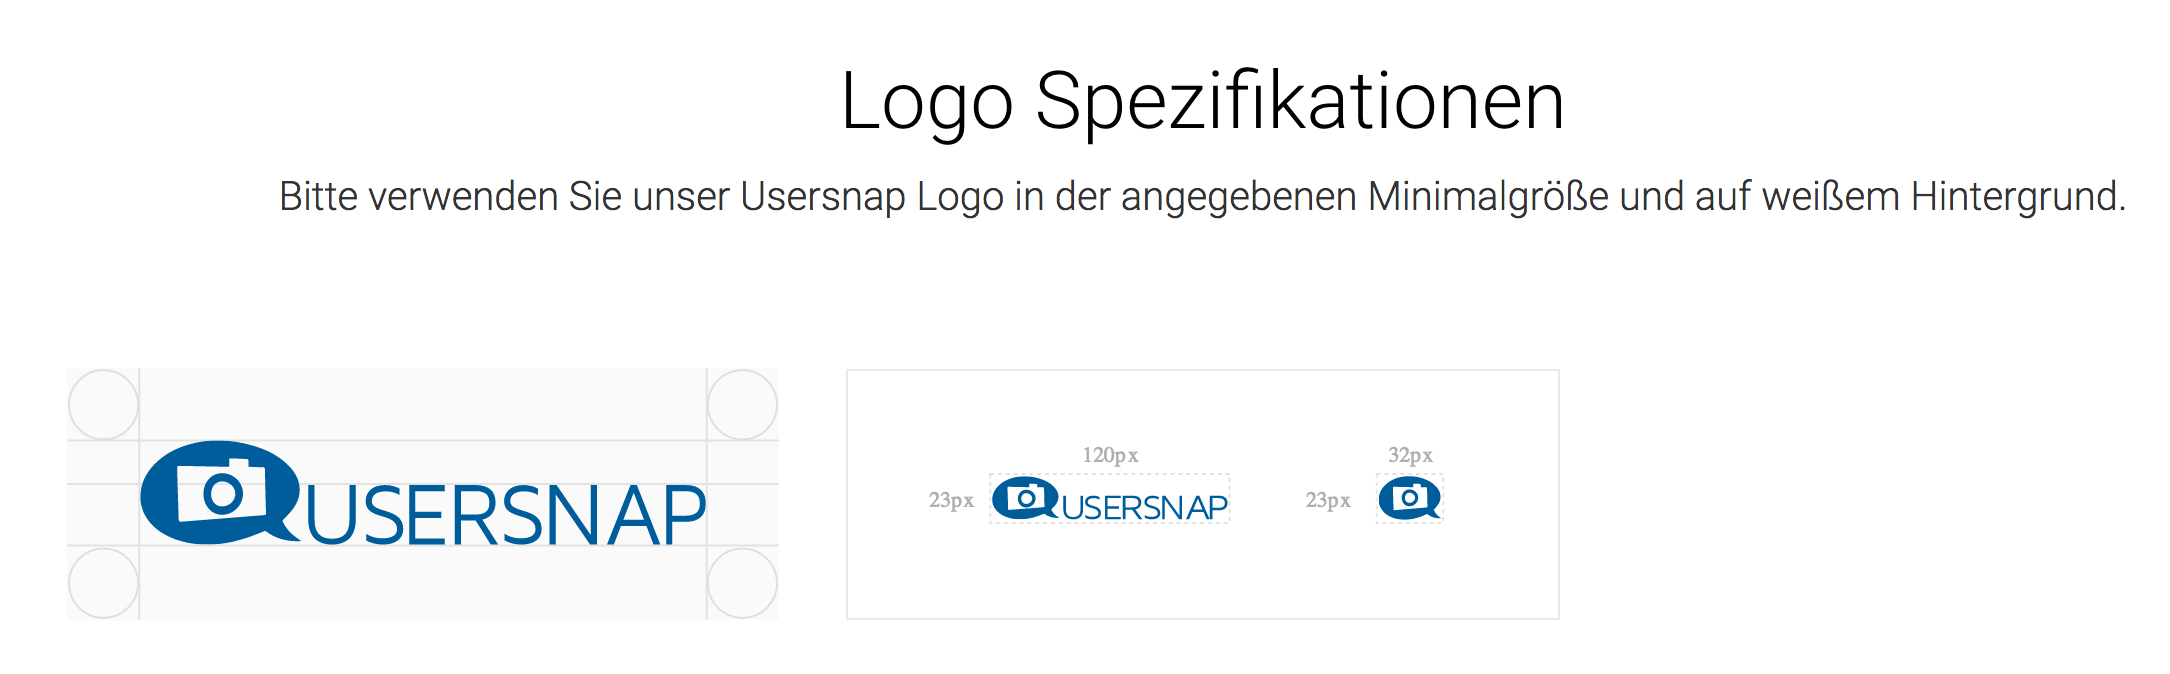 logo spezifikationen